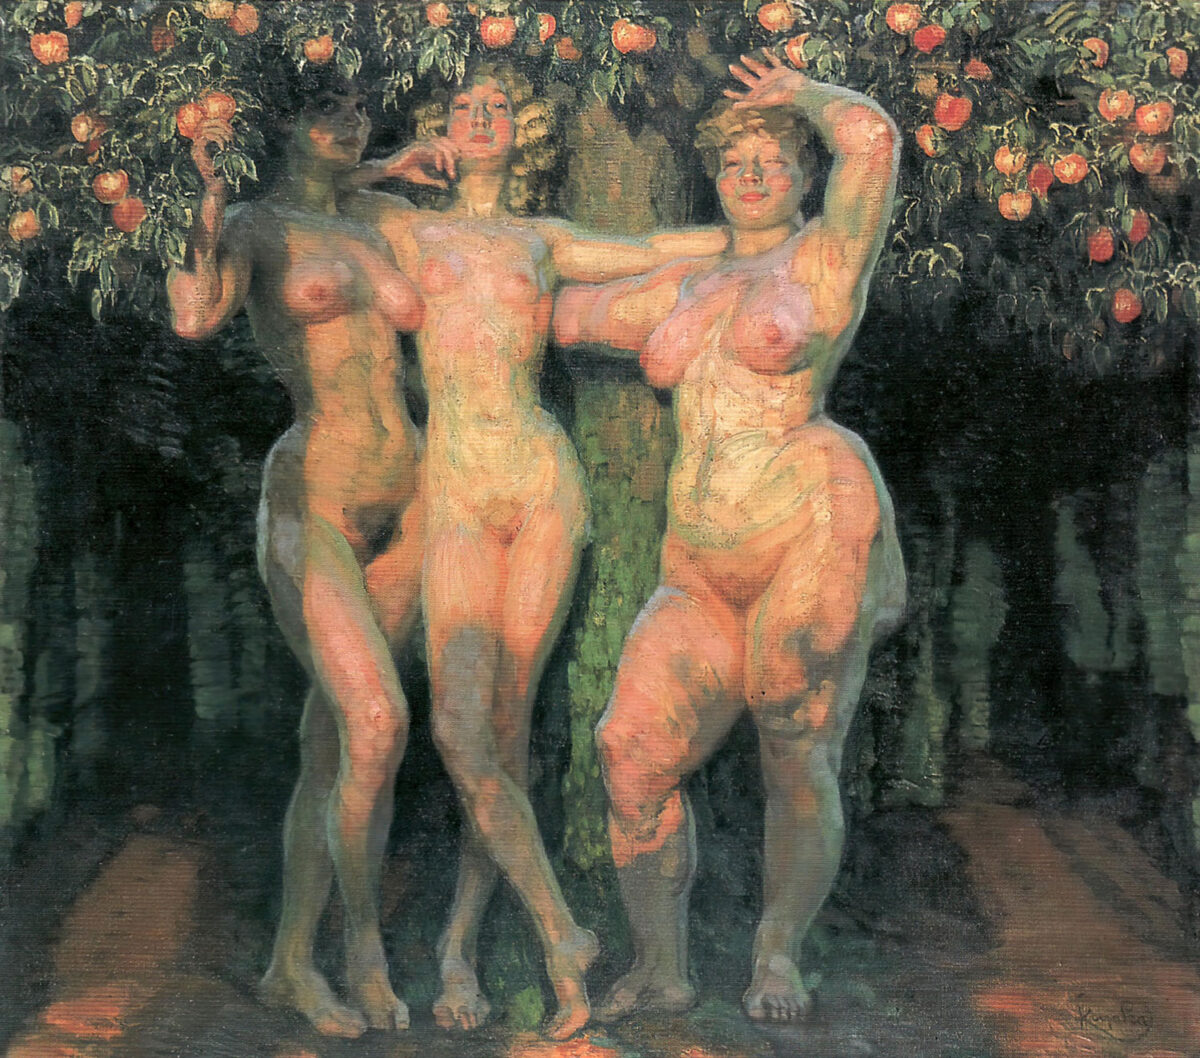 Die drei Grazien von Frantisek Kupka verkörpern das pralle Leben. Sie stehen unter einem prall mit Früchten behangenen Apfelbaum und schauen den Betrachter direkt an. So wird aus dem Motiv der drei Grazien ein Symbol der Fruchtbarkeit.